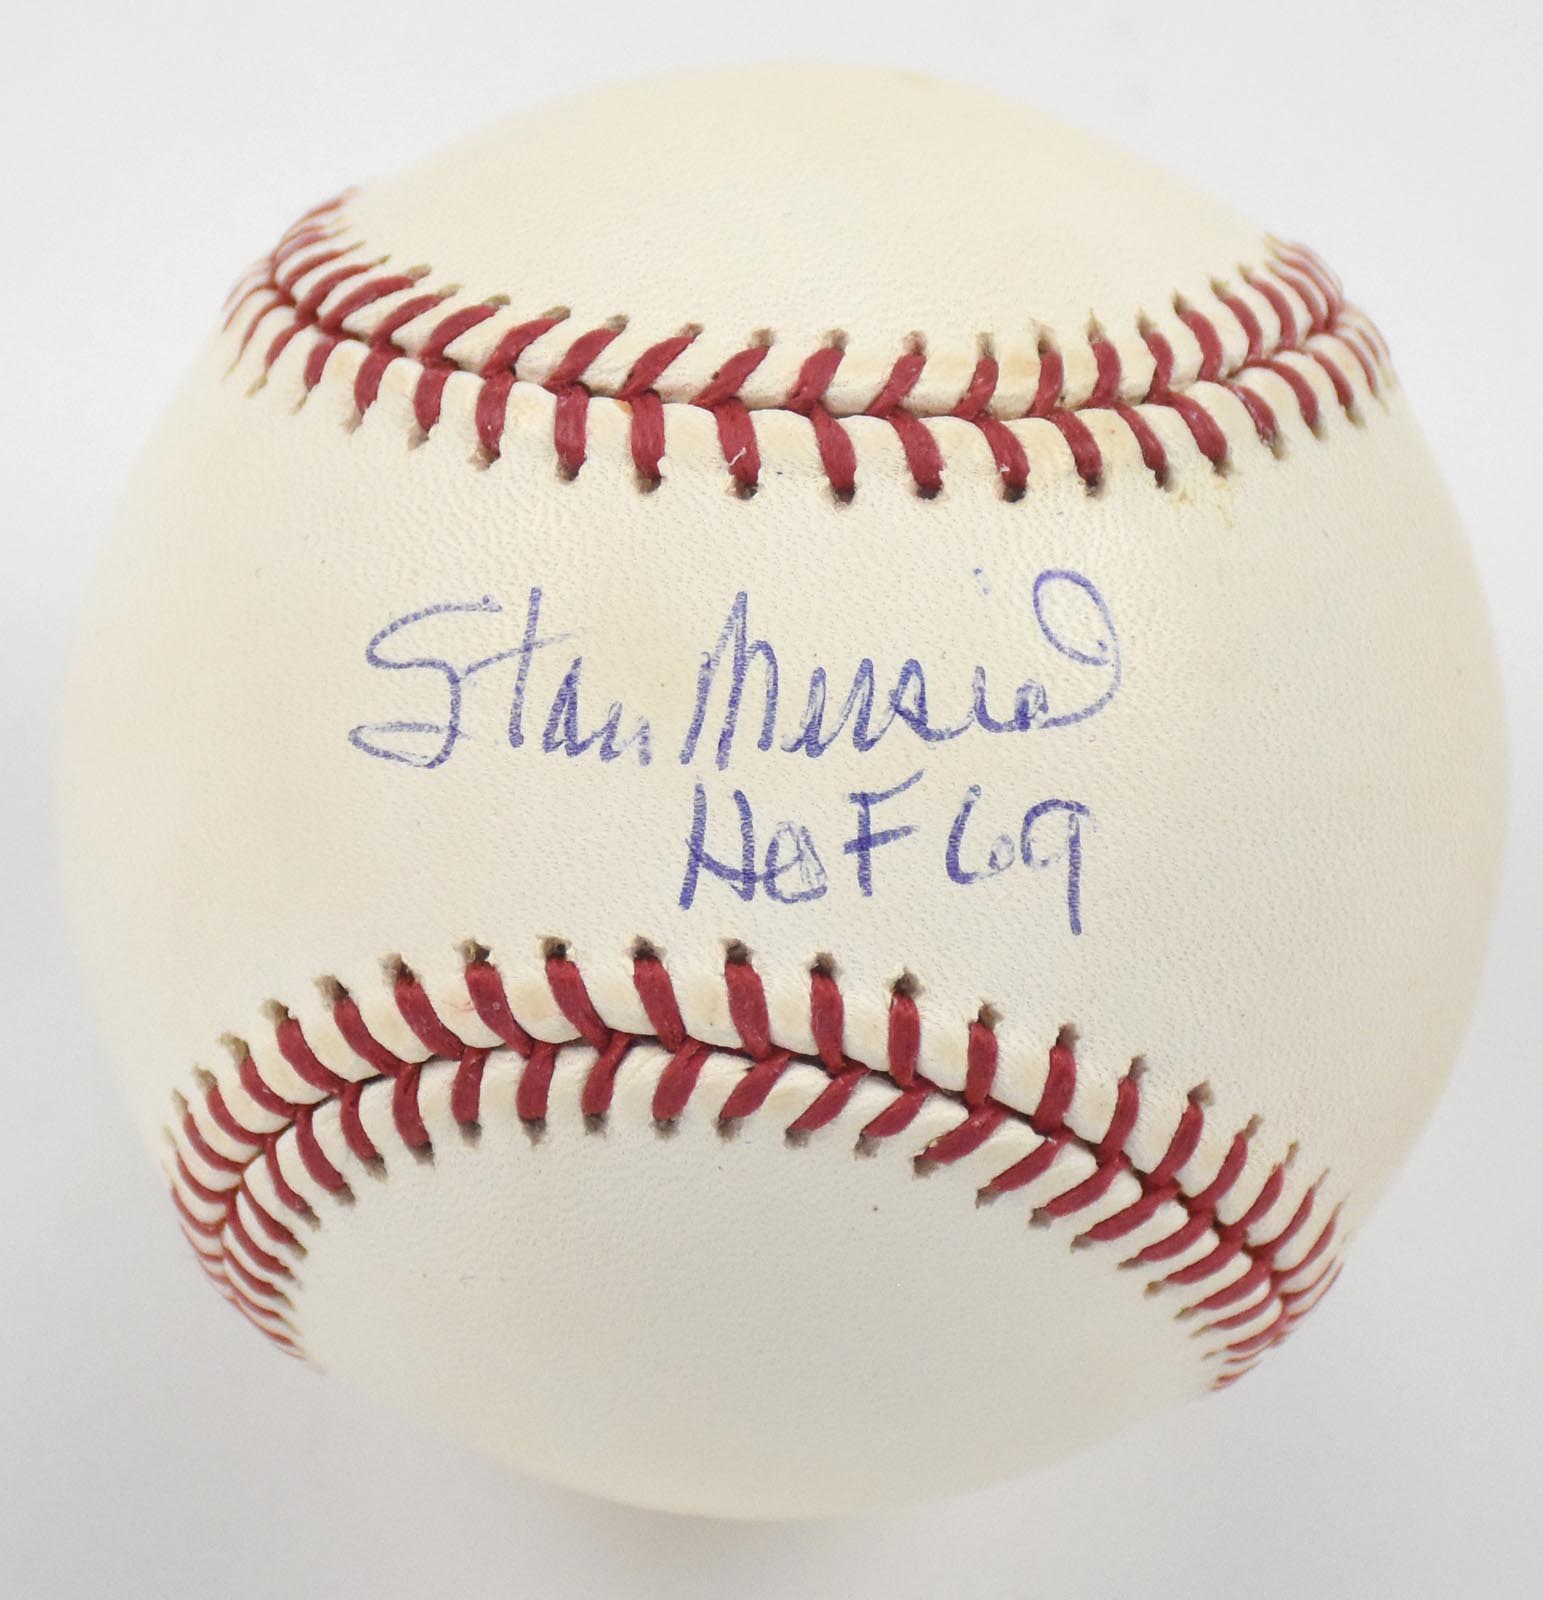 Baseball Autographs - Stan Musial Single Signed "HOF 69" Baseball (Reggie Jackson COA)